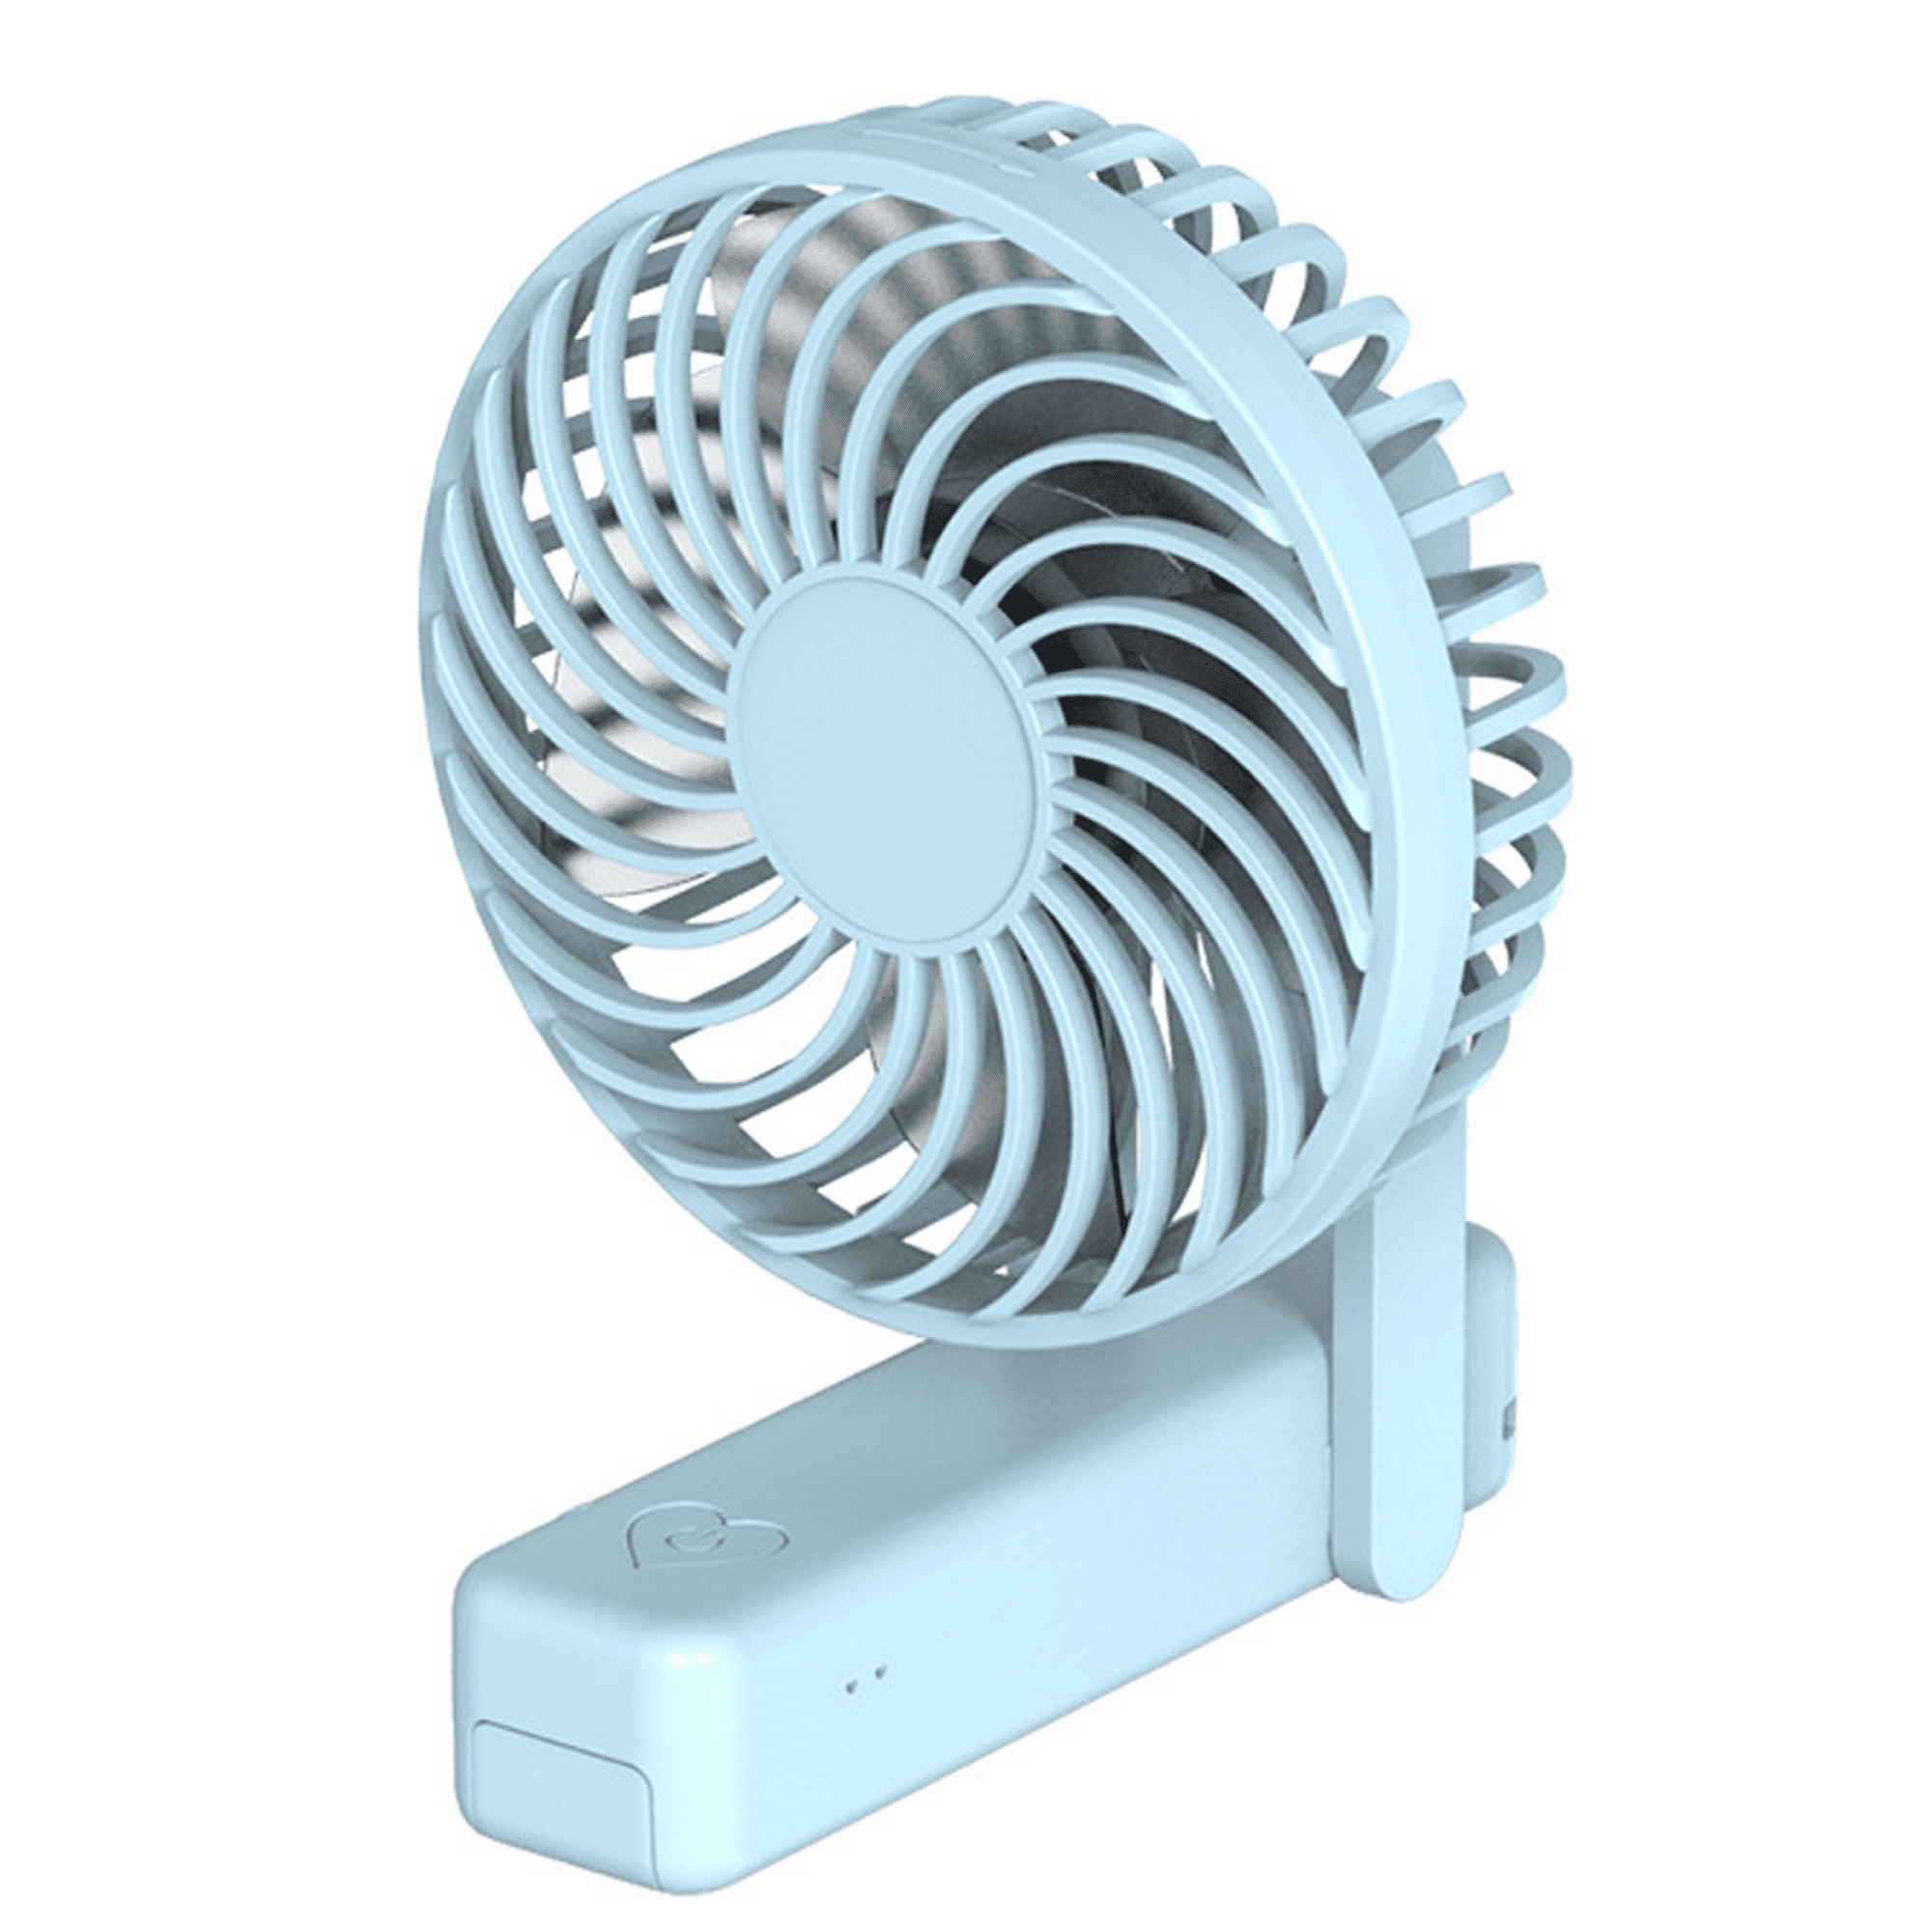 Nuevo mini ventilador recargable usb para dormitorio de estudiantes, ventilador  silencioso portátil Abanopi admirador